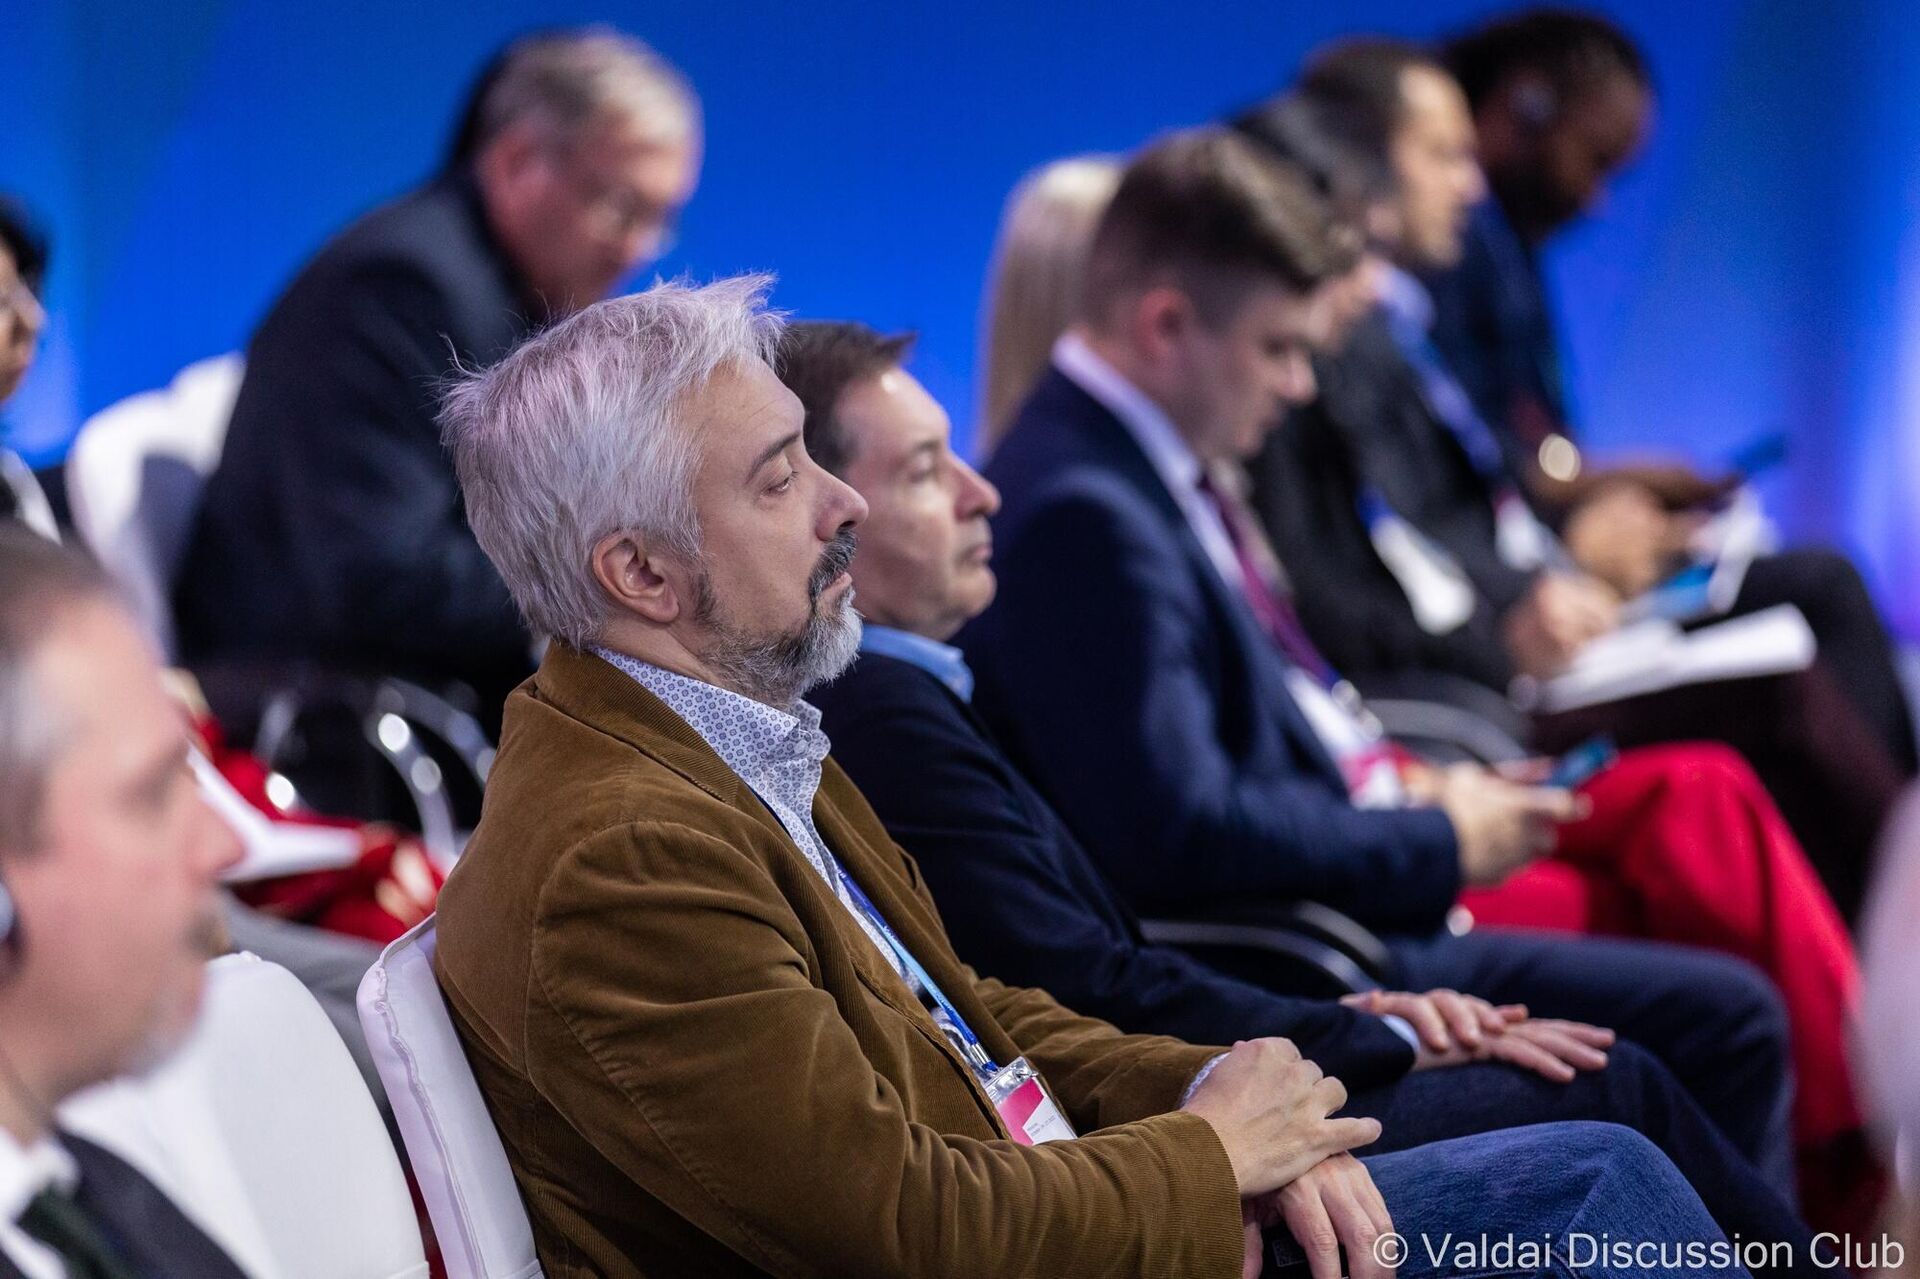 Especialistas participam de debates durante a 19ª Reunião Anual do Clube de Discussão de Valdai, em Moscou, Rússia, 25 de outubro de 2022 - Sputnik Brasil, 1920, 25.10.2022